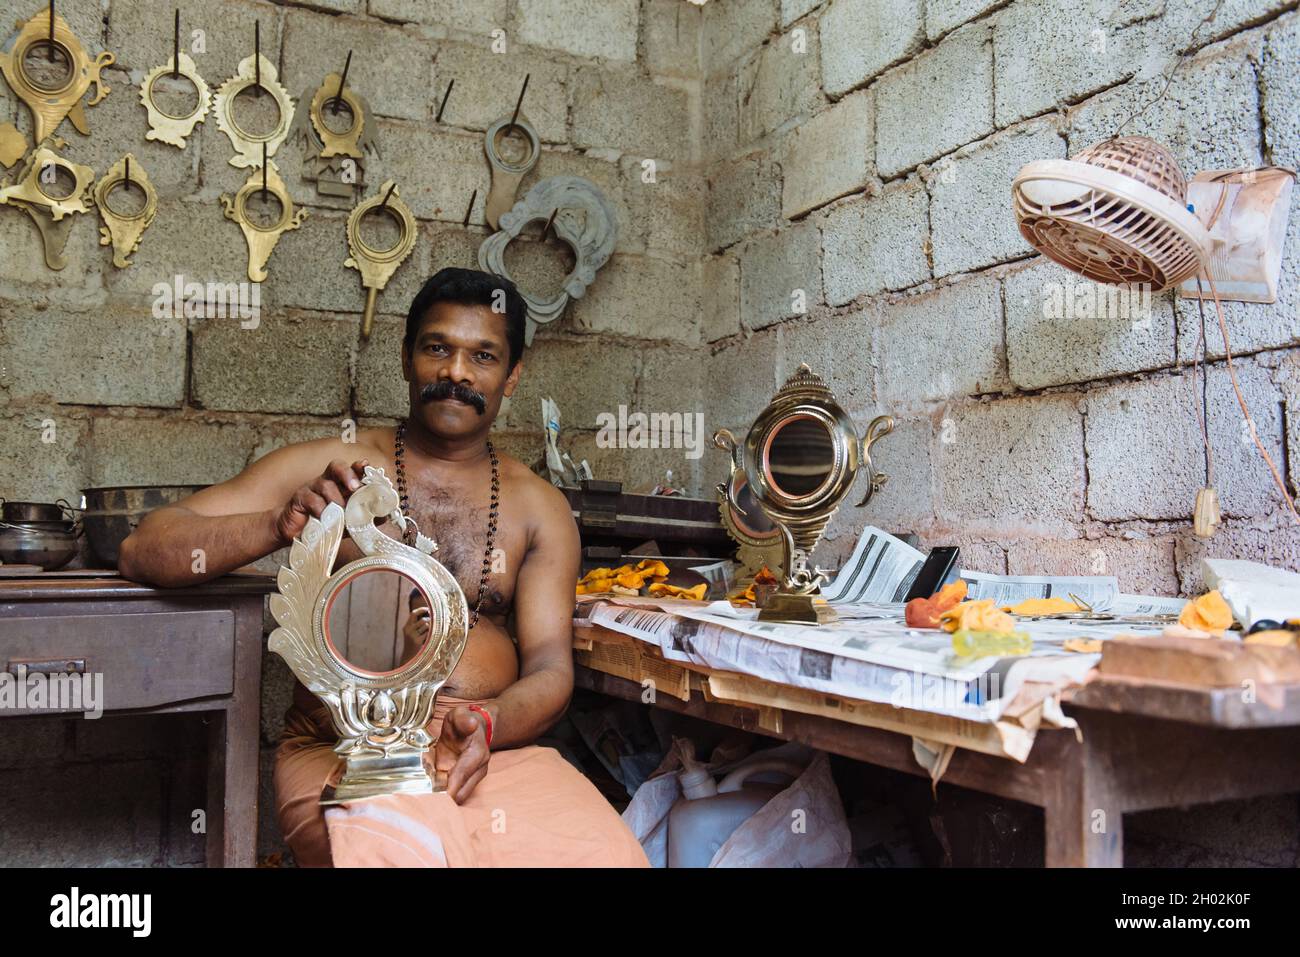 Aranmula, India - 5 dicembre 2015: Kerala, specchi d'argento produzione artigianale in zona rurale, l'uomo fa artigianato unico lavoro d'arte. Piccola famiglia Foto Stock